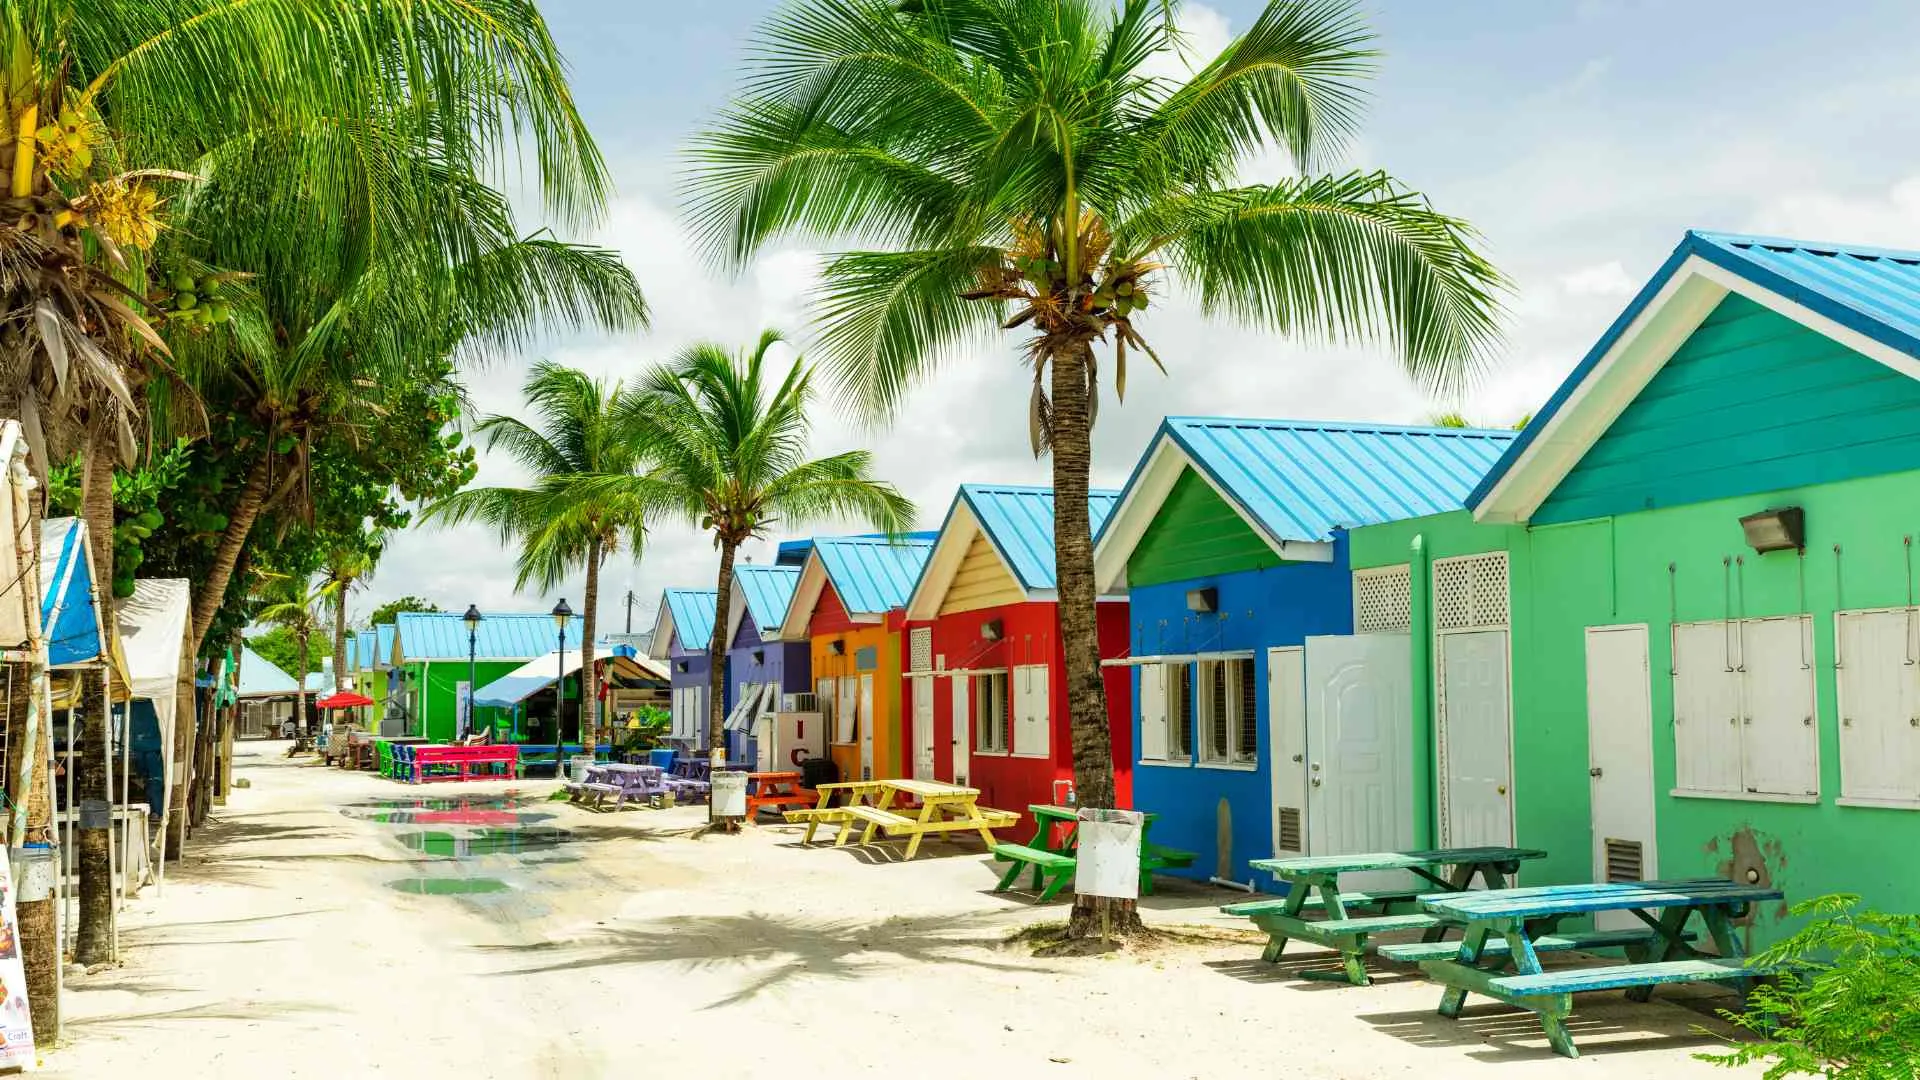 Caribbean colorful buildings